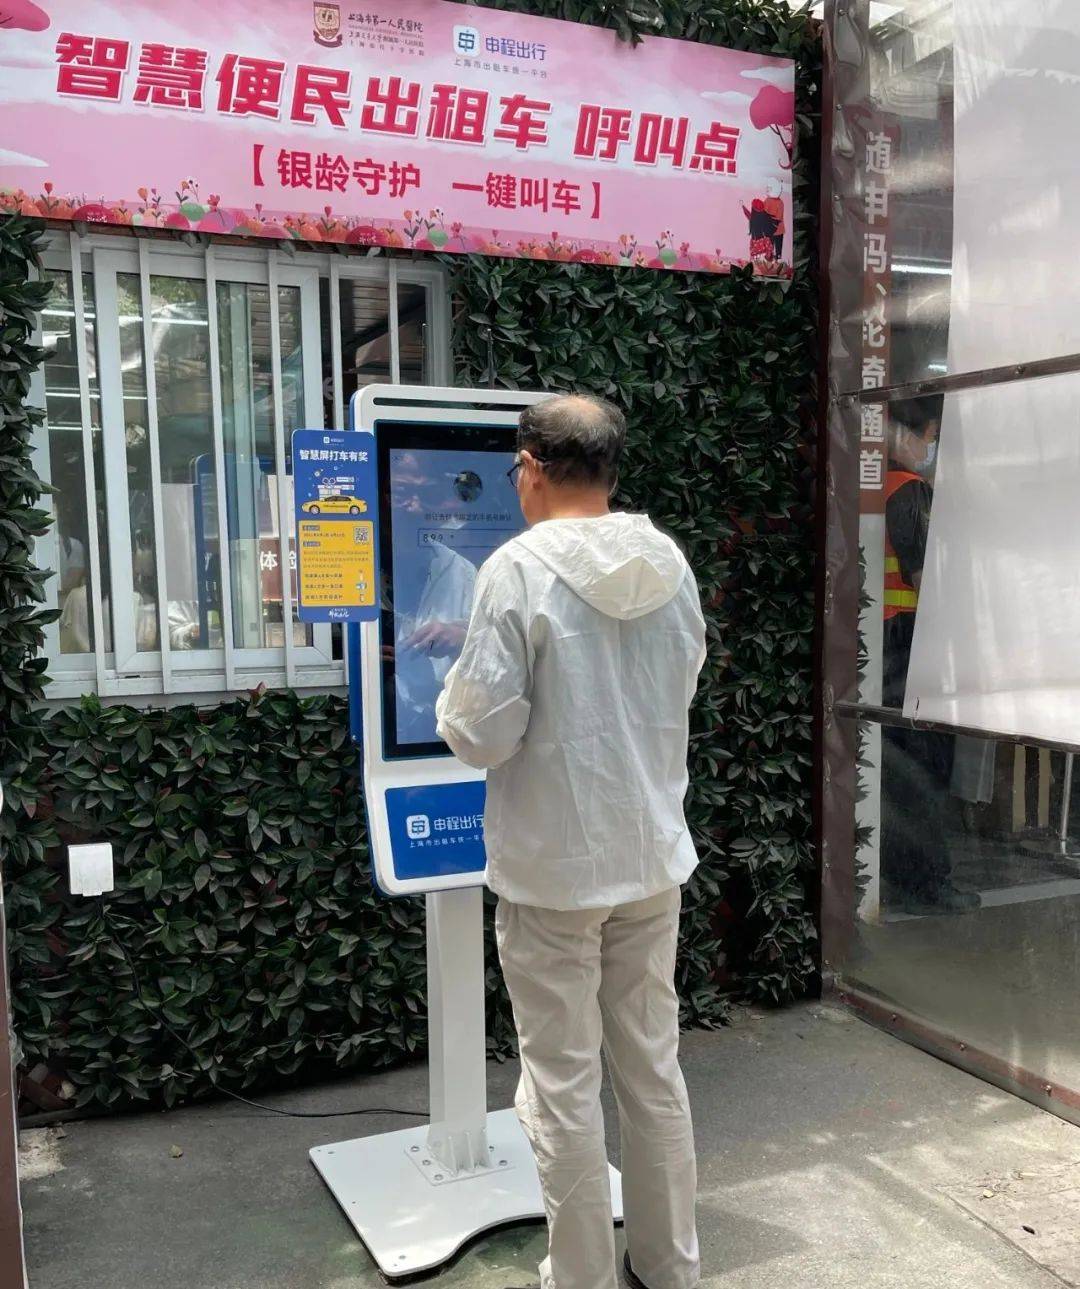 试点|上海四家医院可“一键叫车”，叫车后在院内等待即有司机接驾